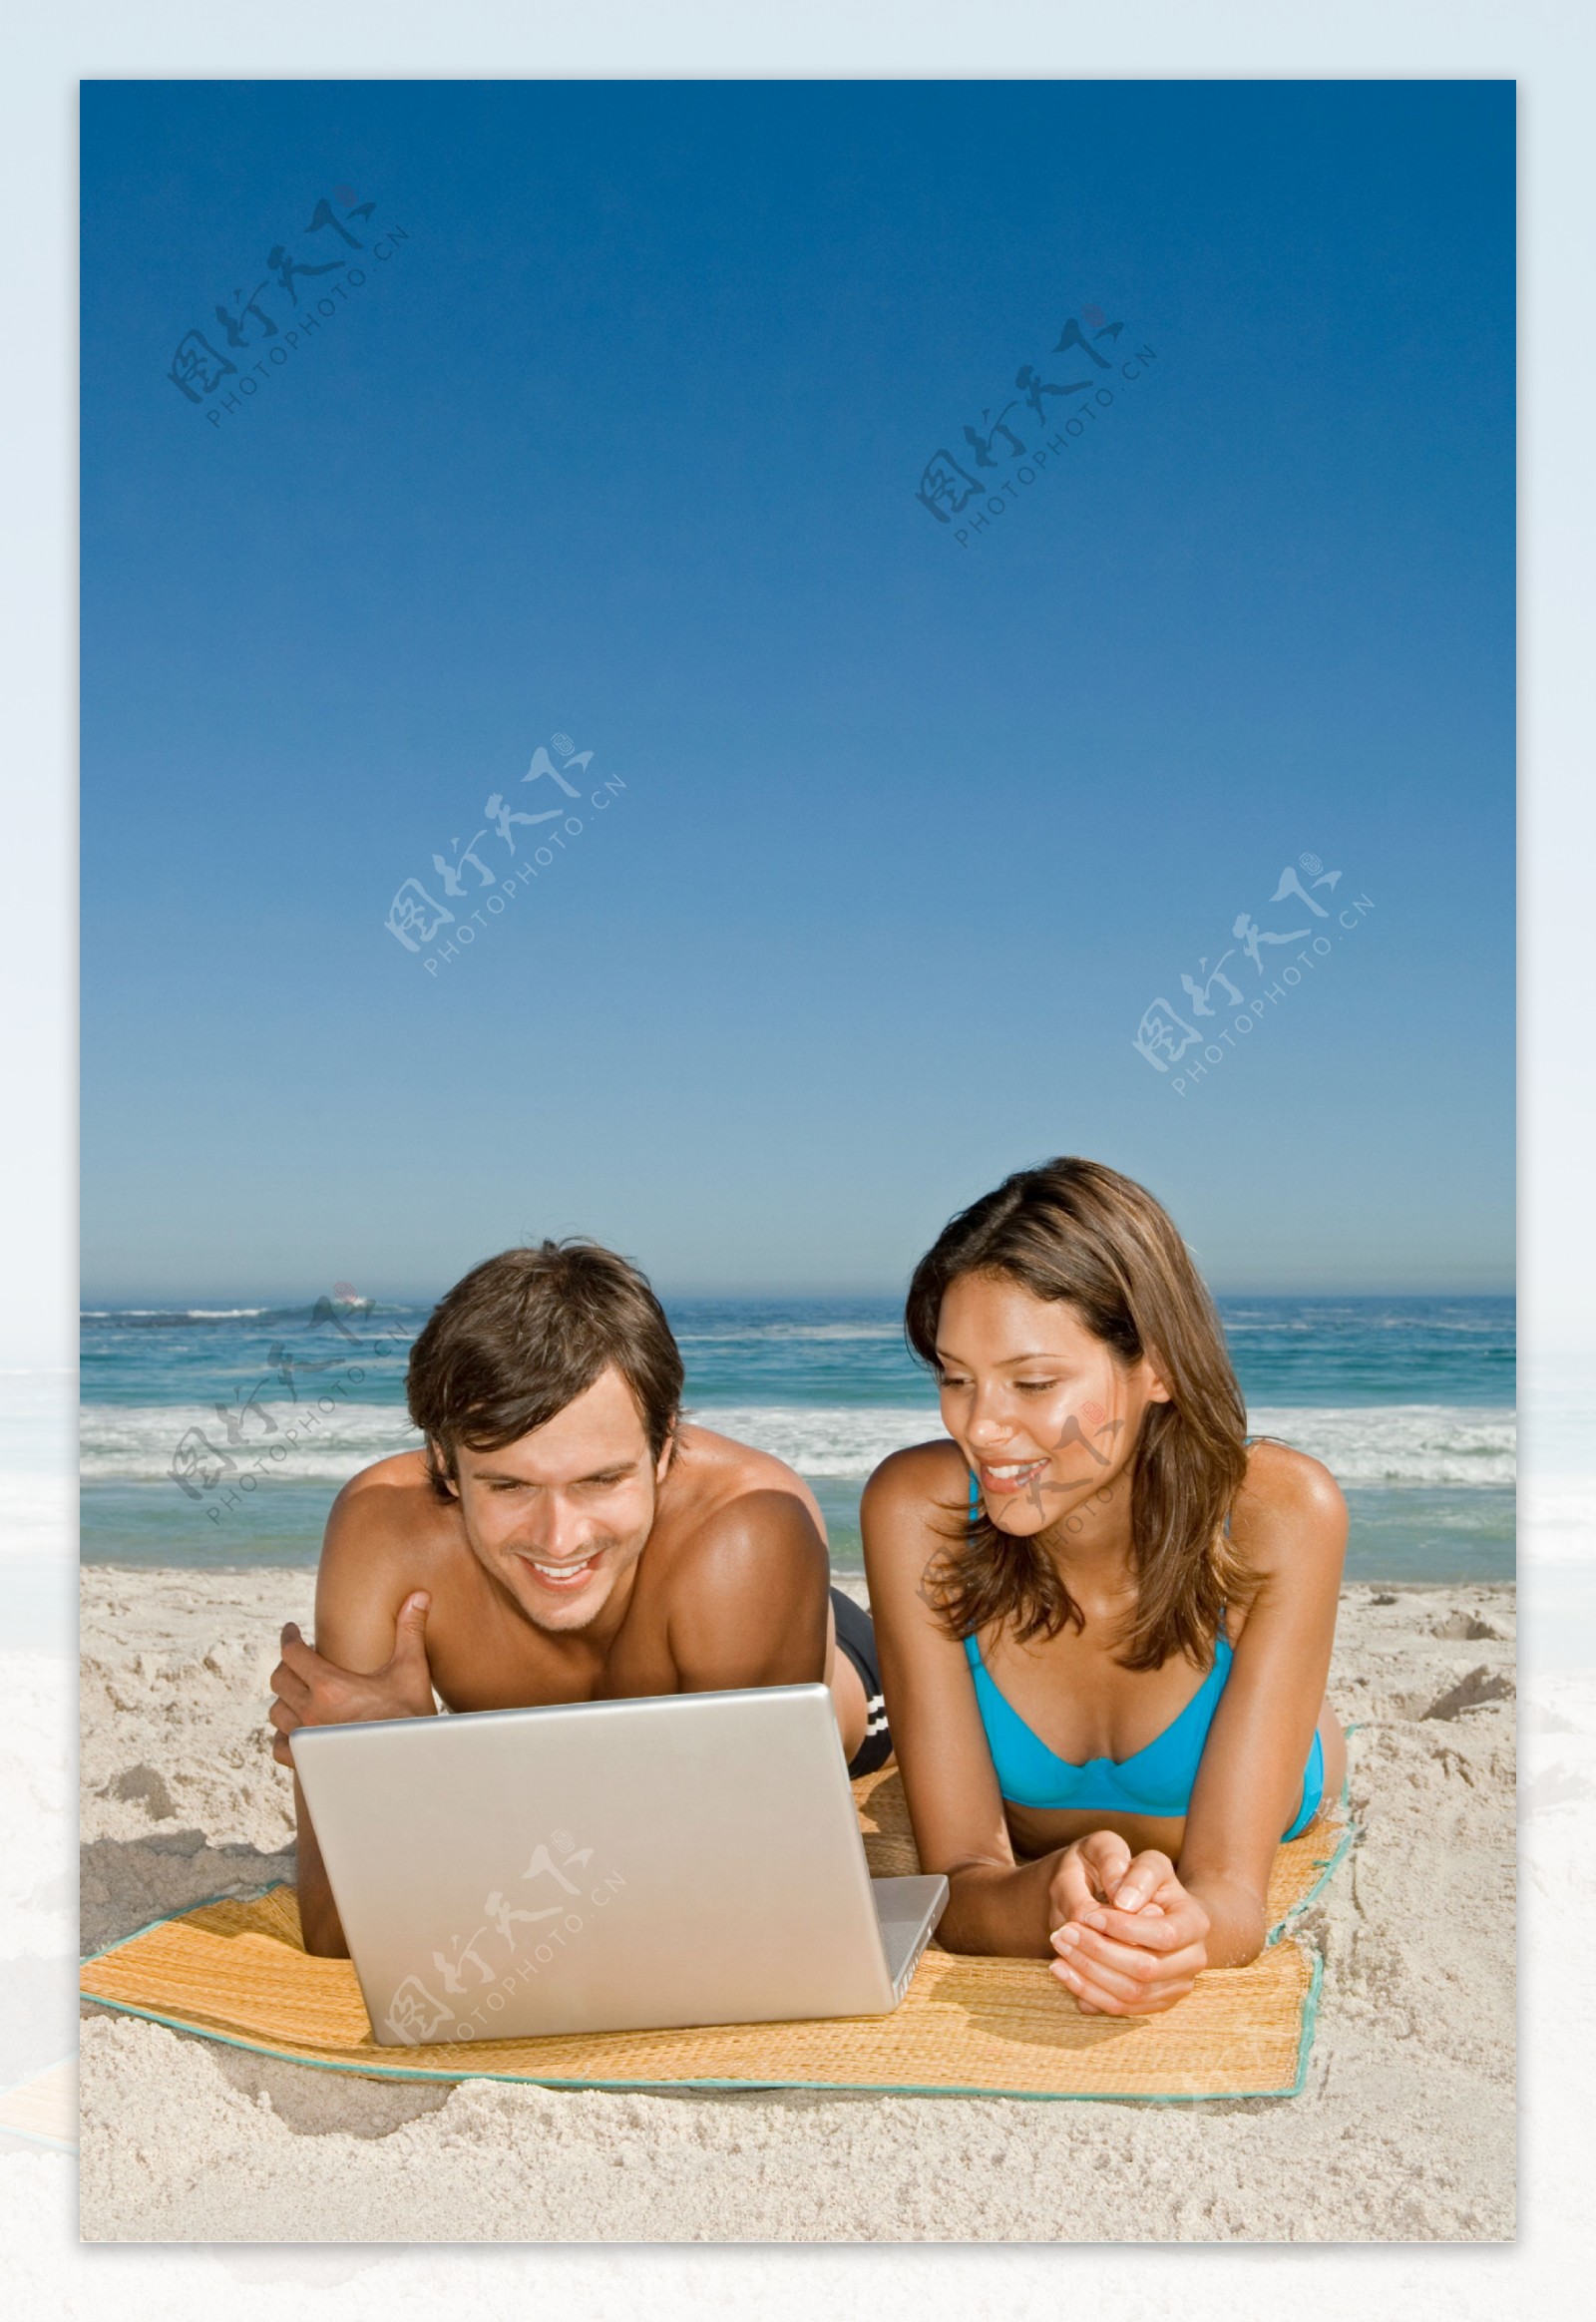 趴着看电脑的情侣图片